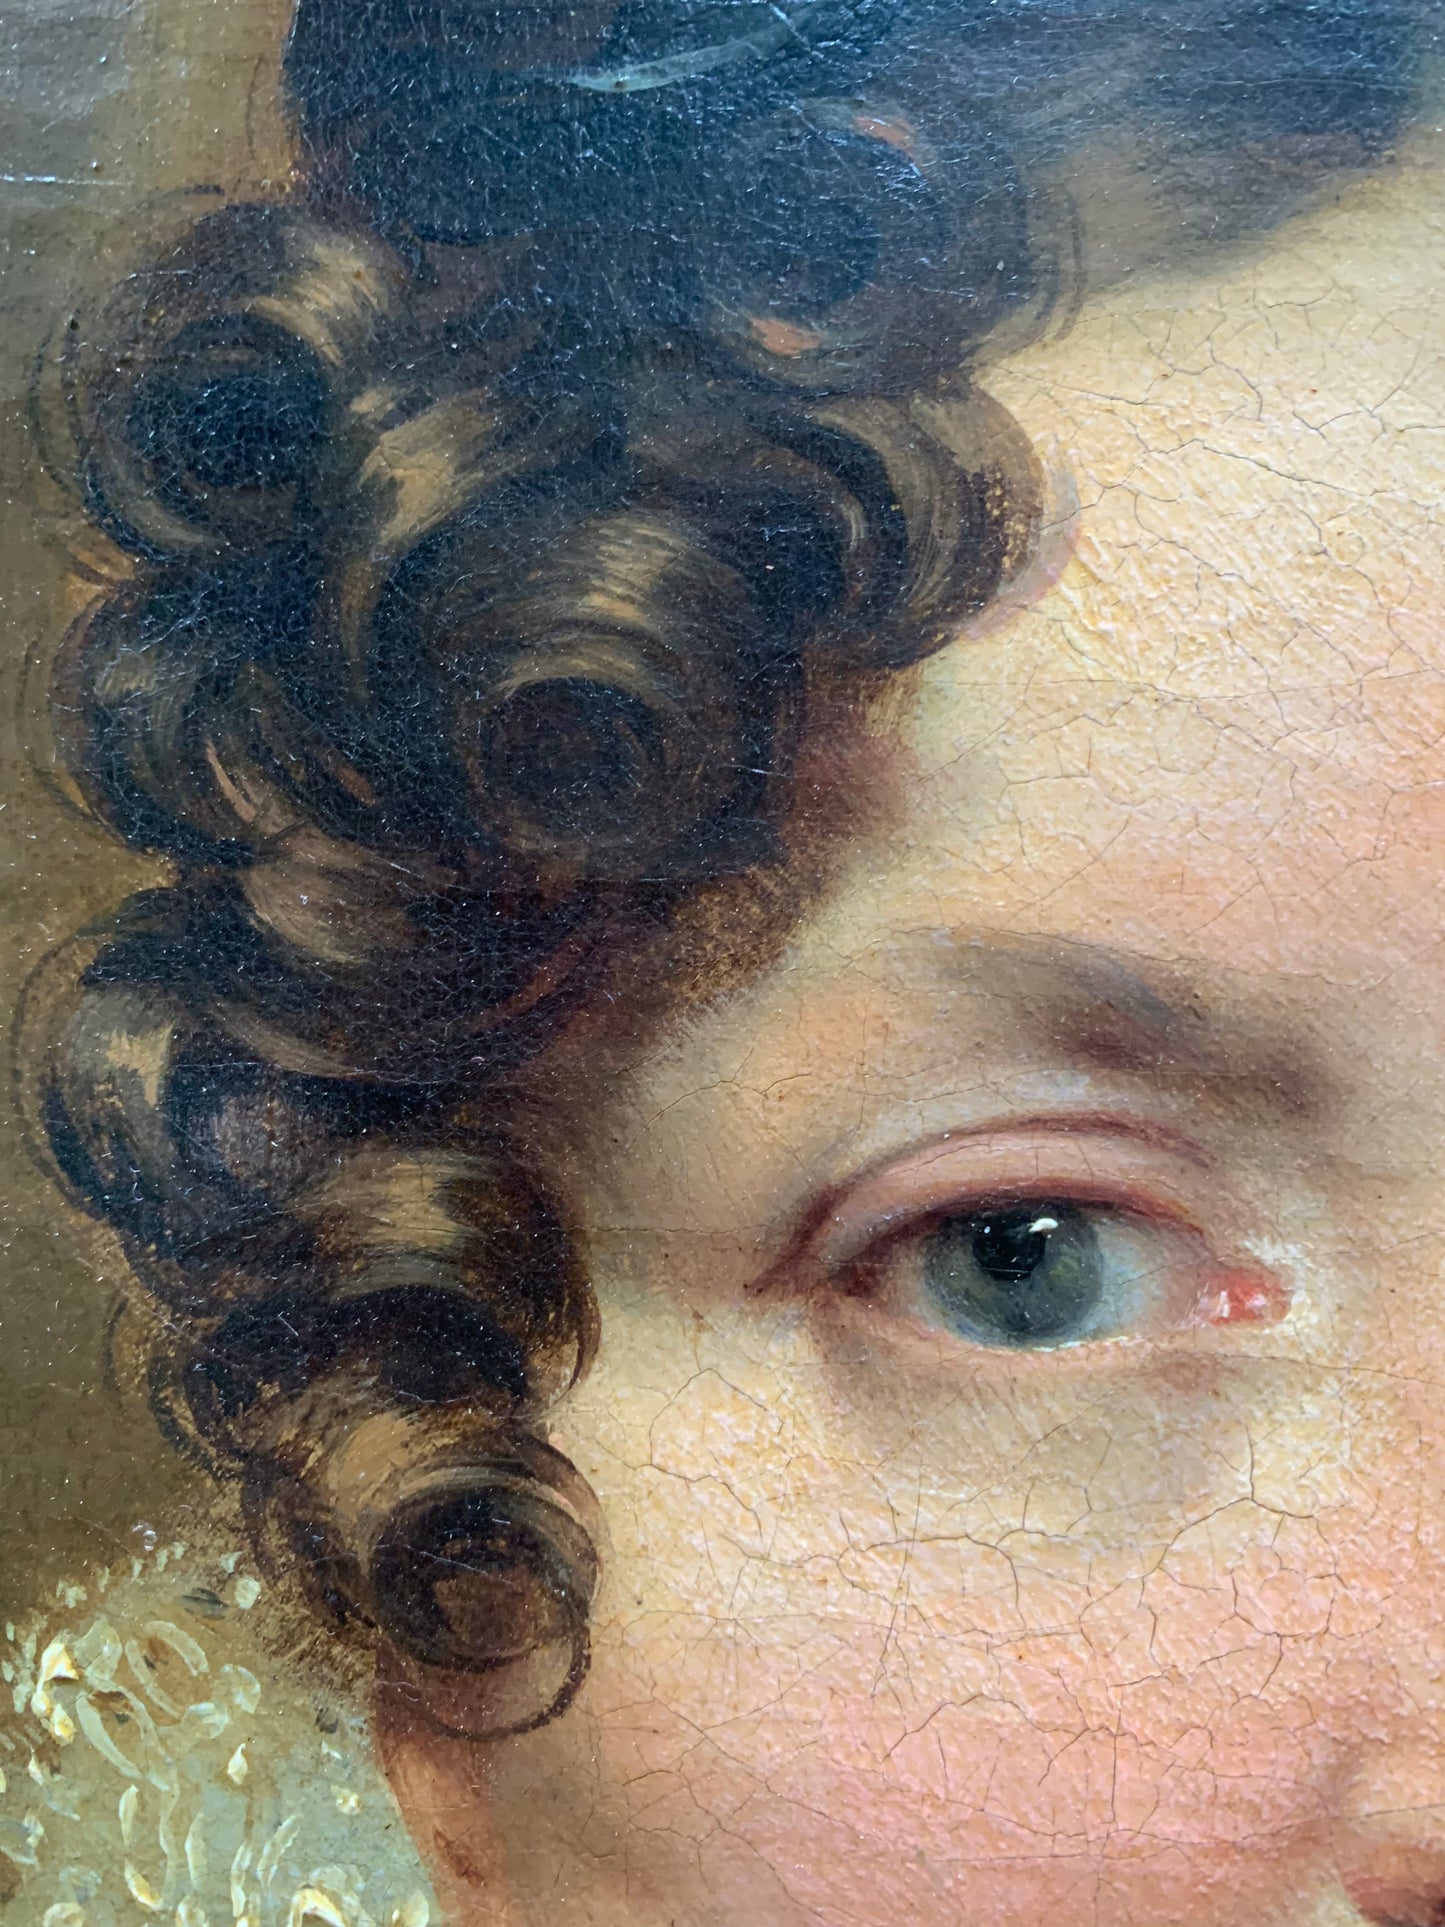 Ca. 1820 Portrait of a Woman. Léon Cogniet (1794-1880, Paris), attributed.